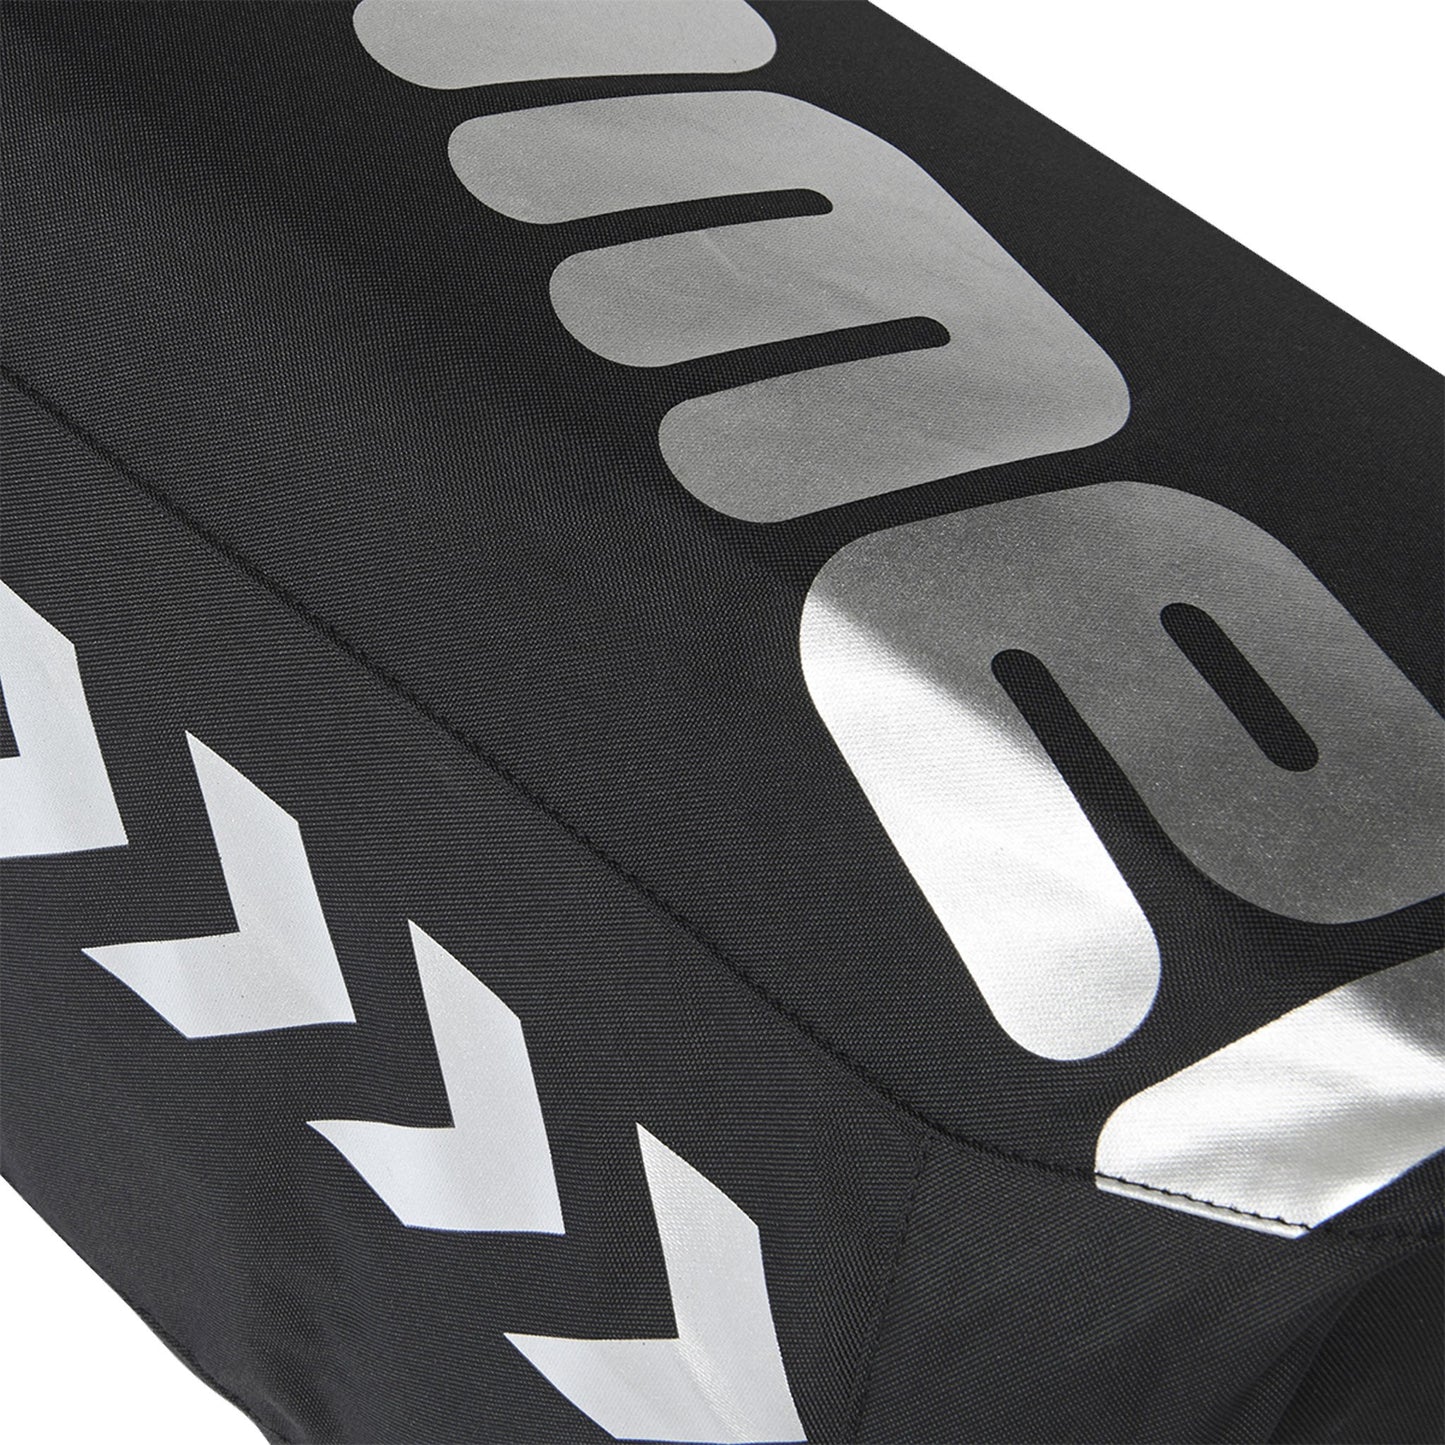 Hummel Core Sports Bag - Large - Black